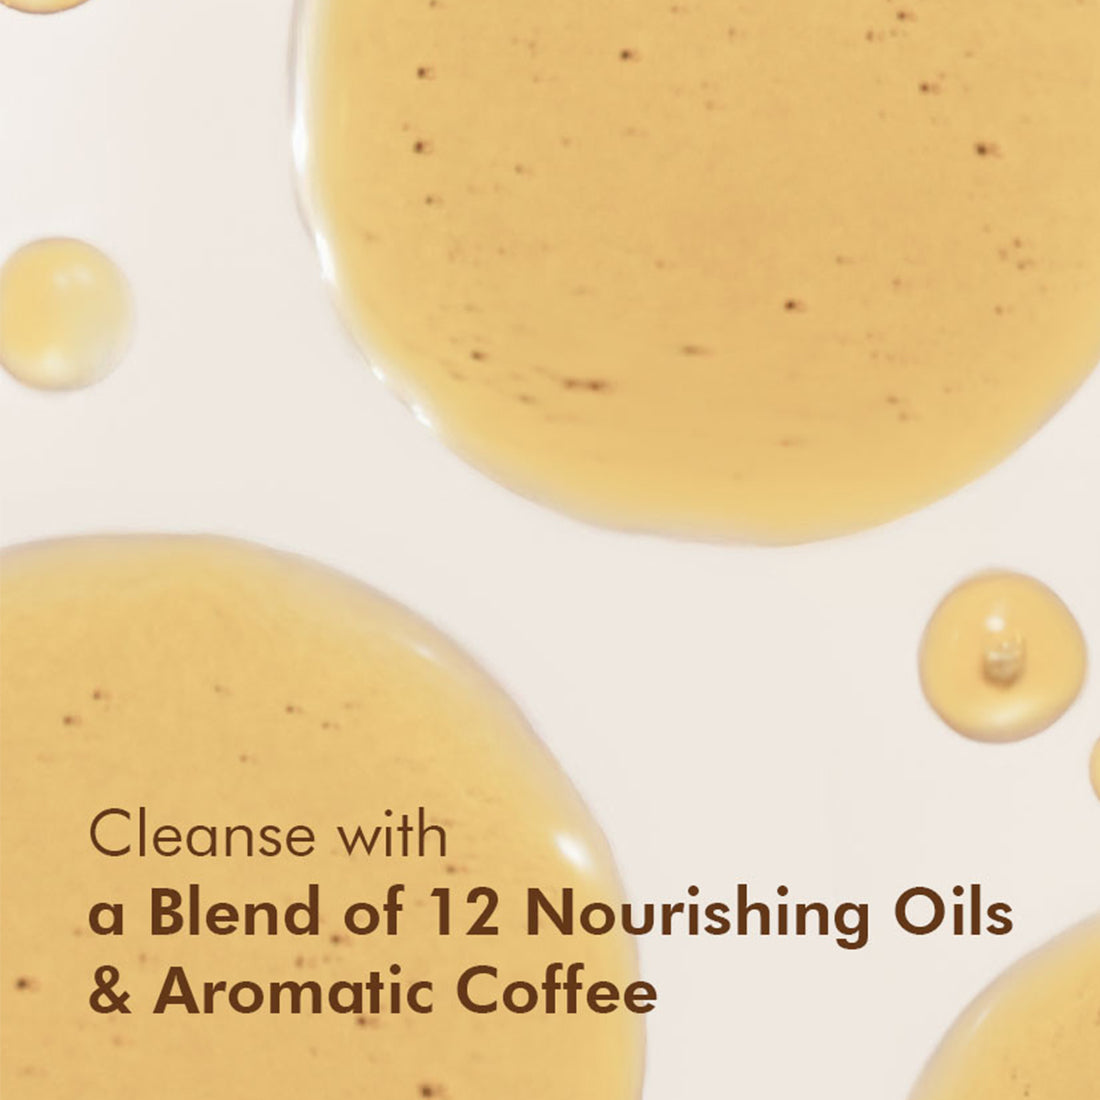 mCaffeine Coffee Shower Oil (Deep moisturization for soft skin)